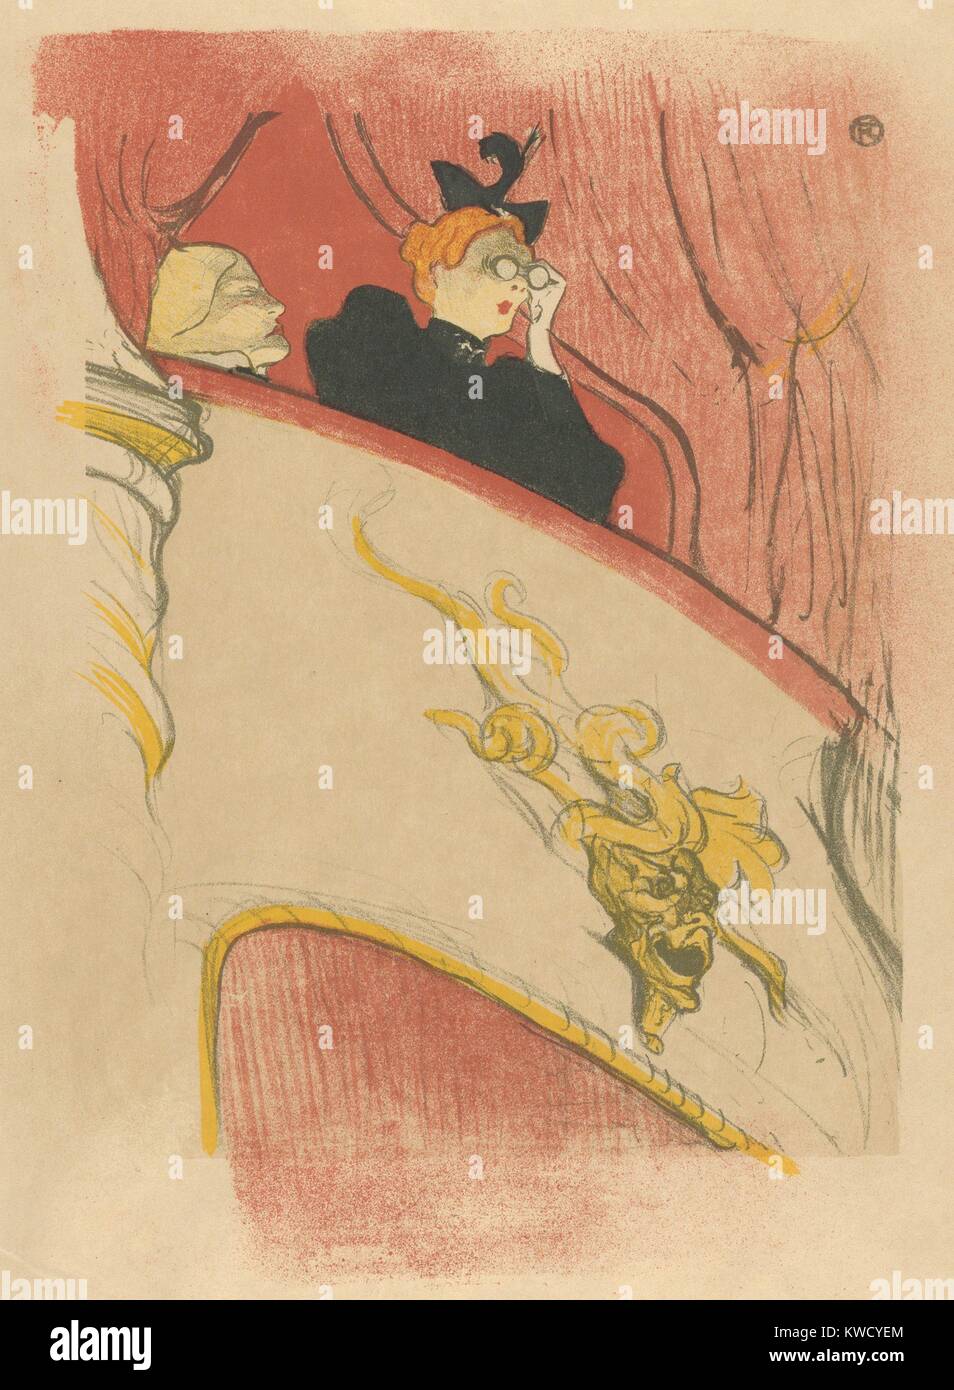 La boîte avec le masque doré, par Henri de Toulouse-Lautrec, 1894, Français Imprimer postimpressionniste. Cette lithographie a été conçu pour décorer l'affiche pour Marcel Le Luguets Missionnaire au Théâtre libre, Paris (BSLOC 2017 5 75) Banque D'Images